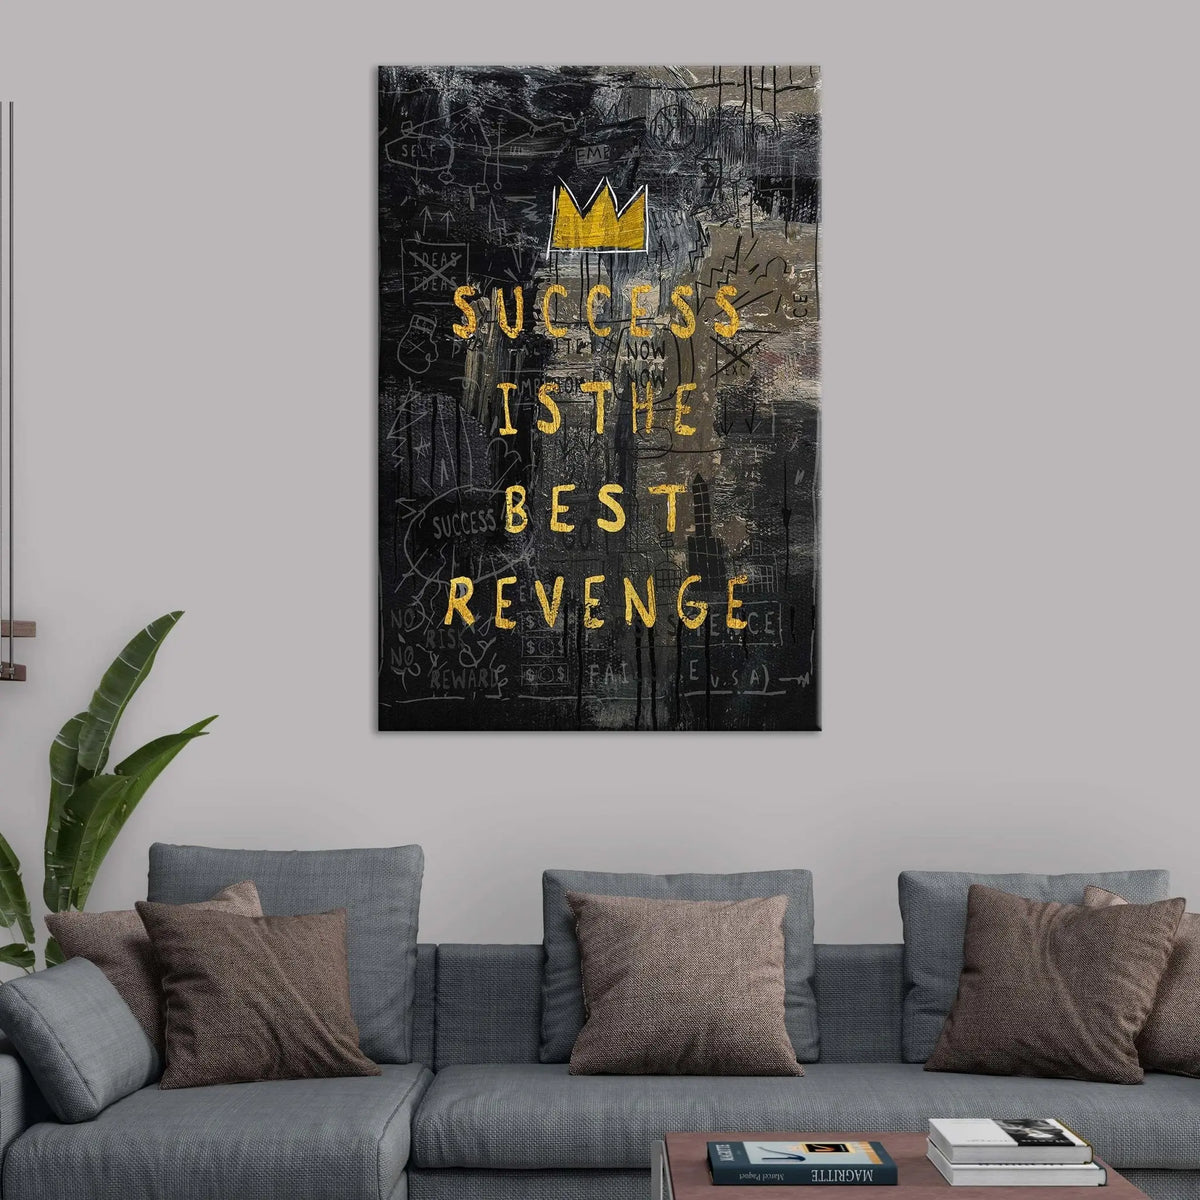 "BEST REVENGE" - Art For Everyone